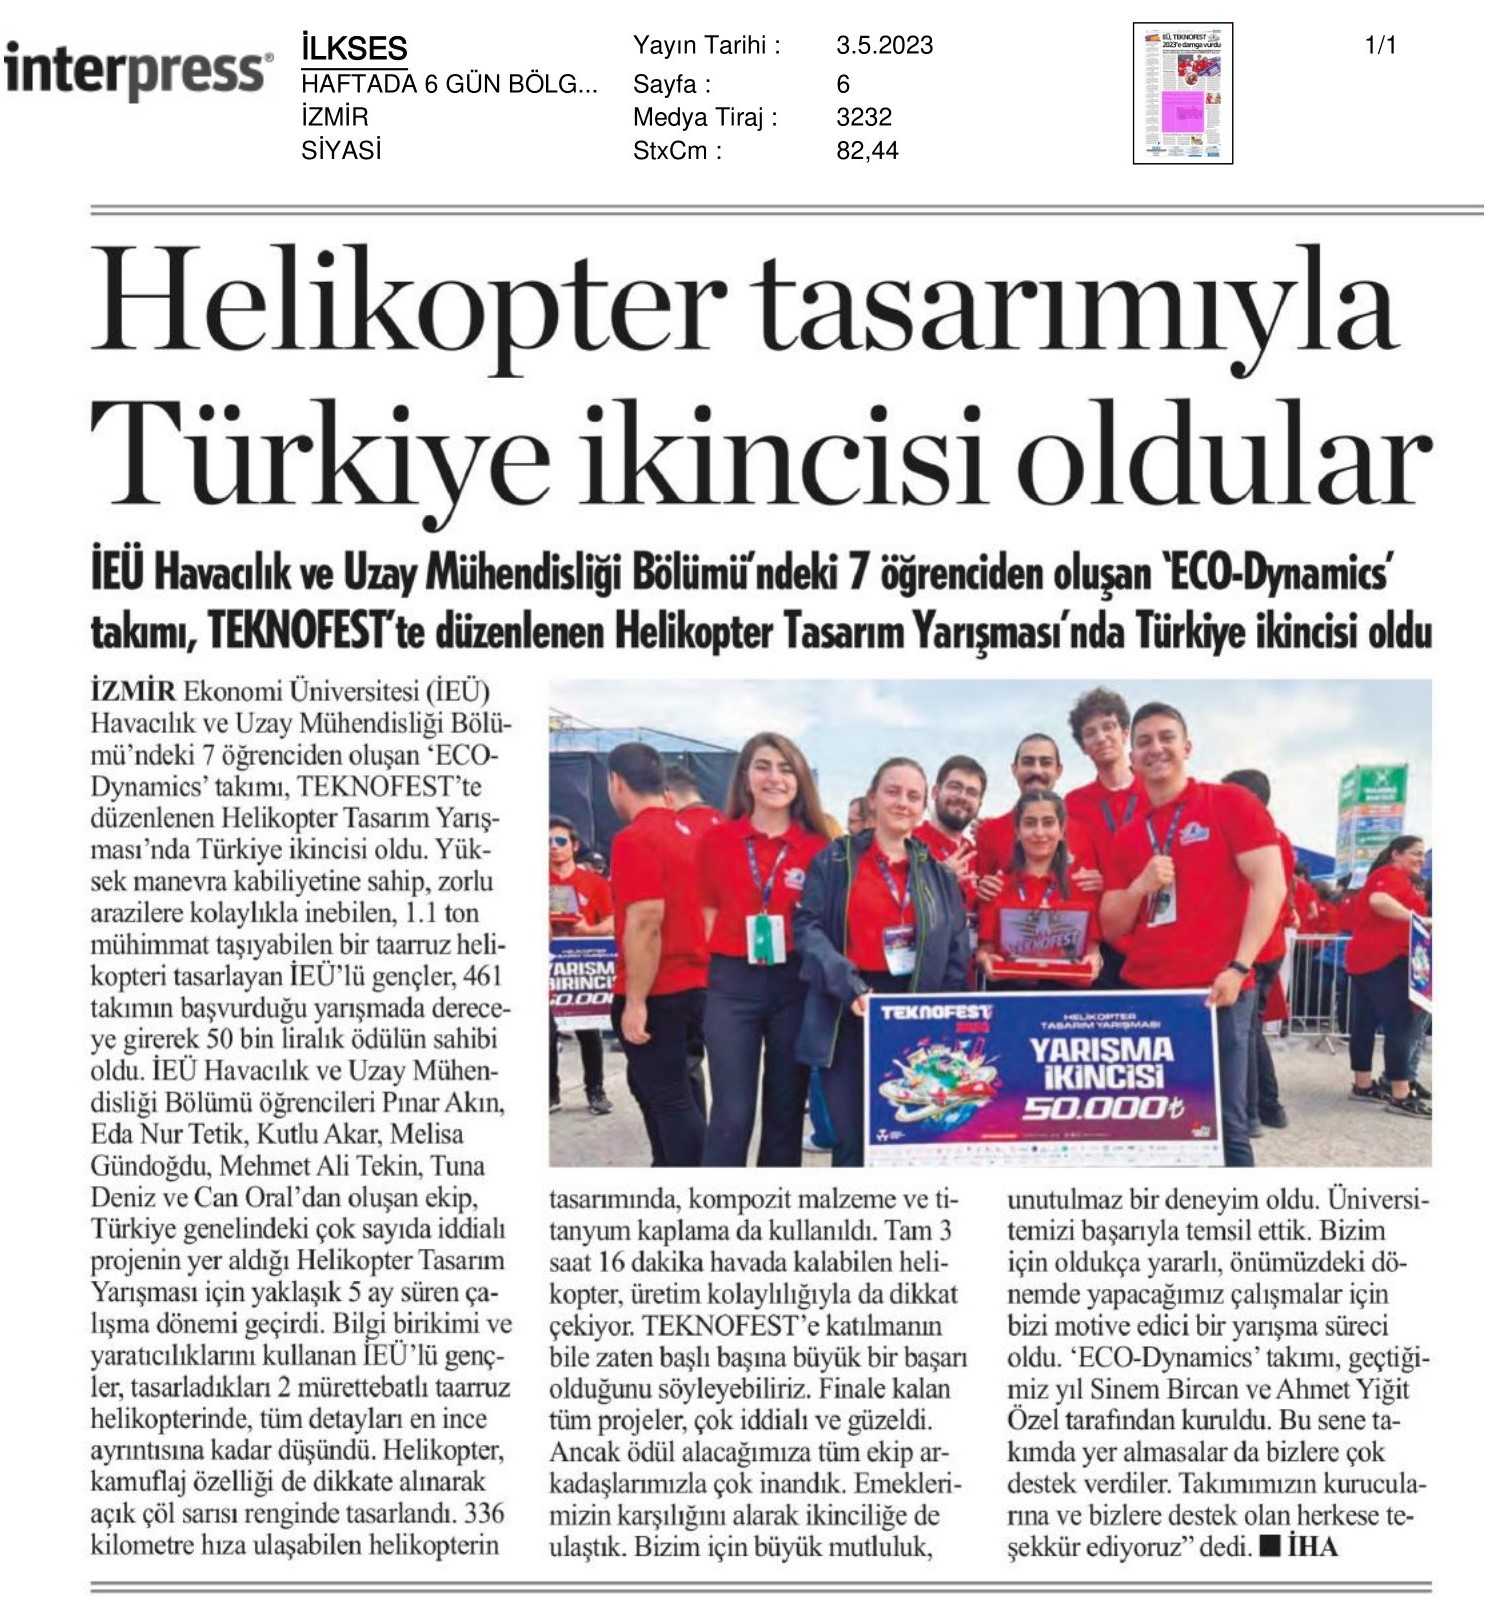 Helikopter Tasarımıyla Türkiye İkincisi Oldular